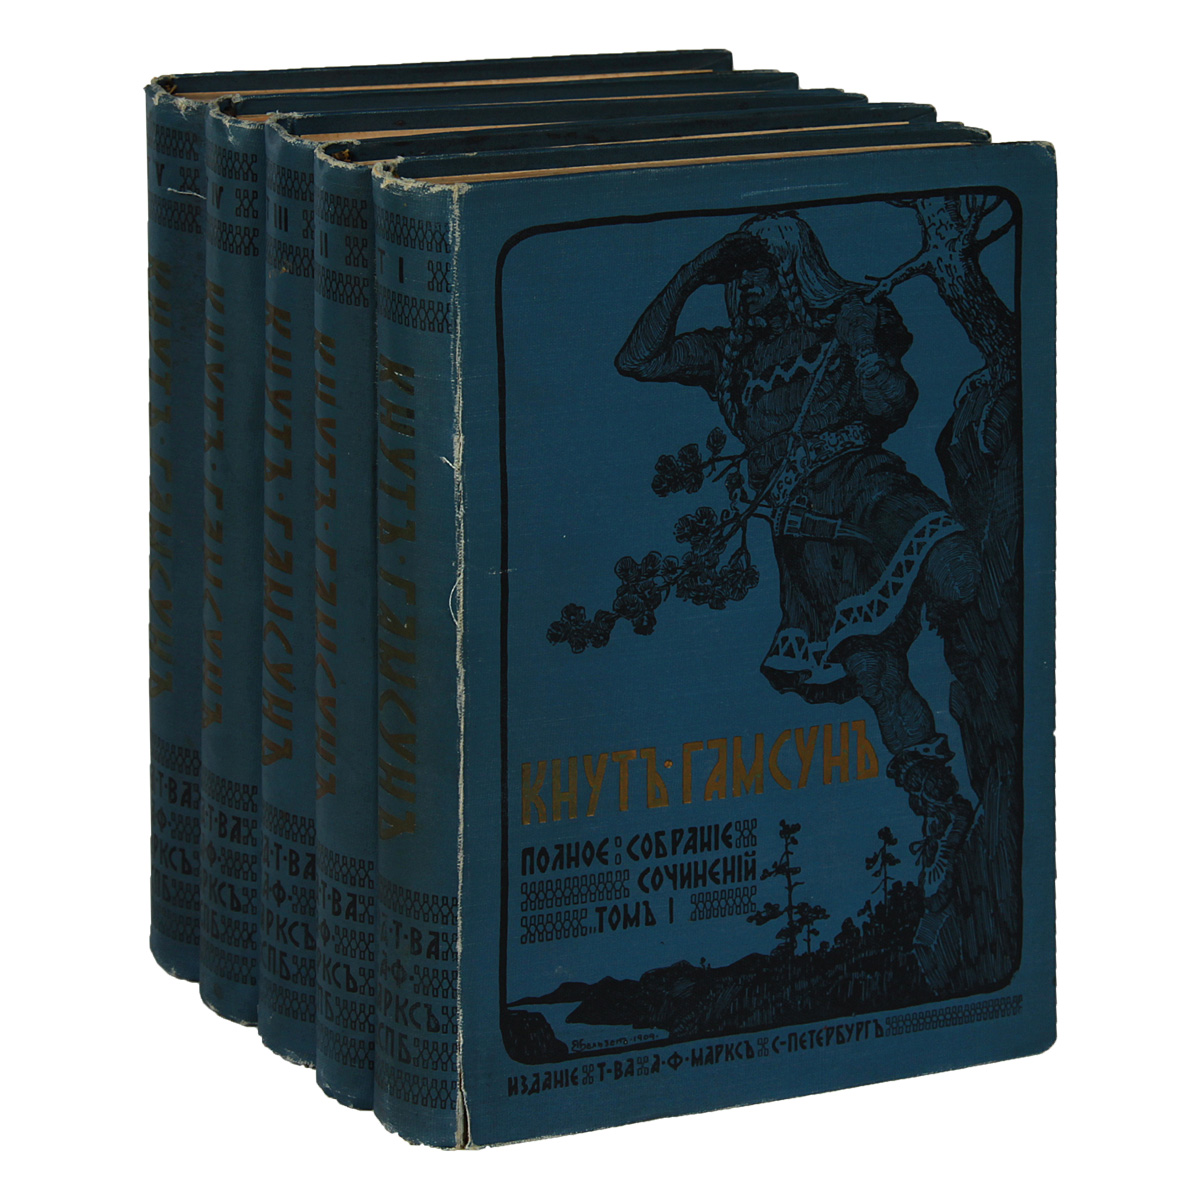 Кнут Гамсун. Полное собрание сочинений в 5 томах (комплект из 5 книг)